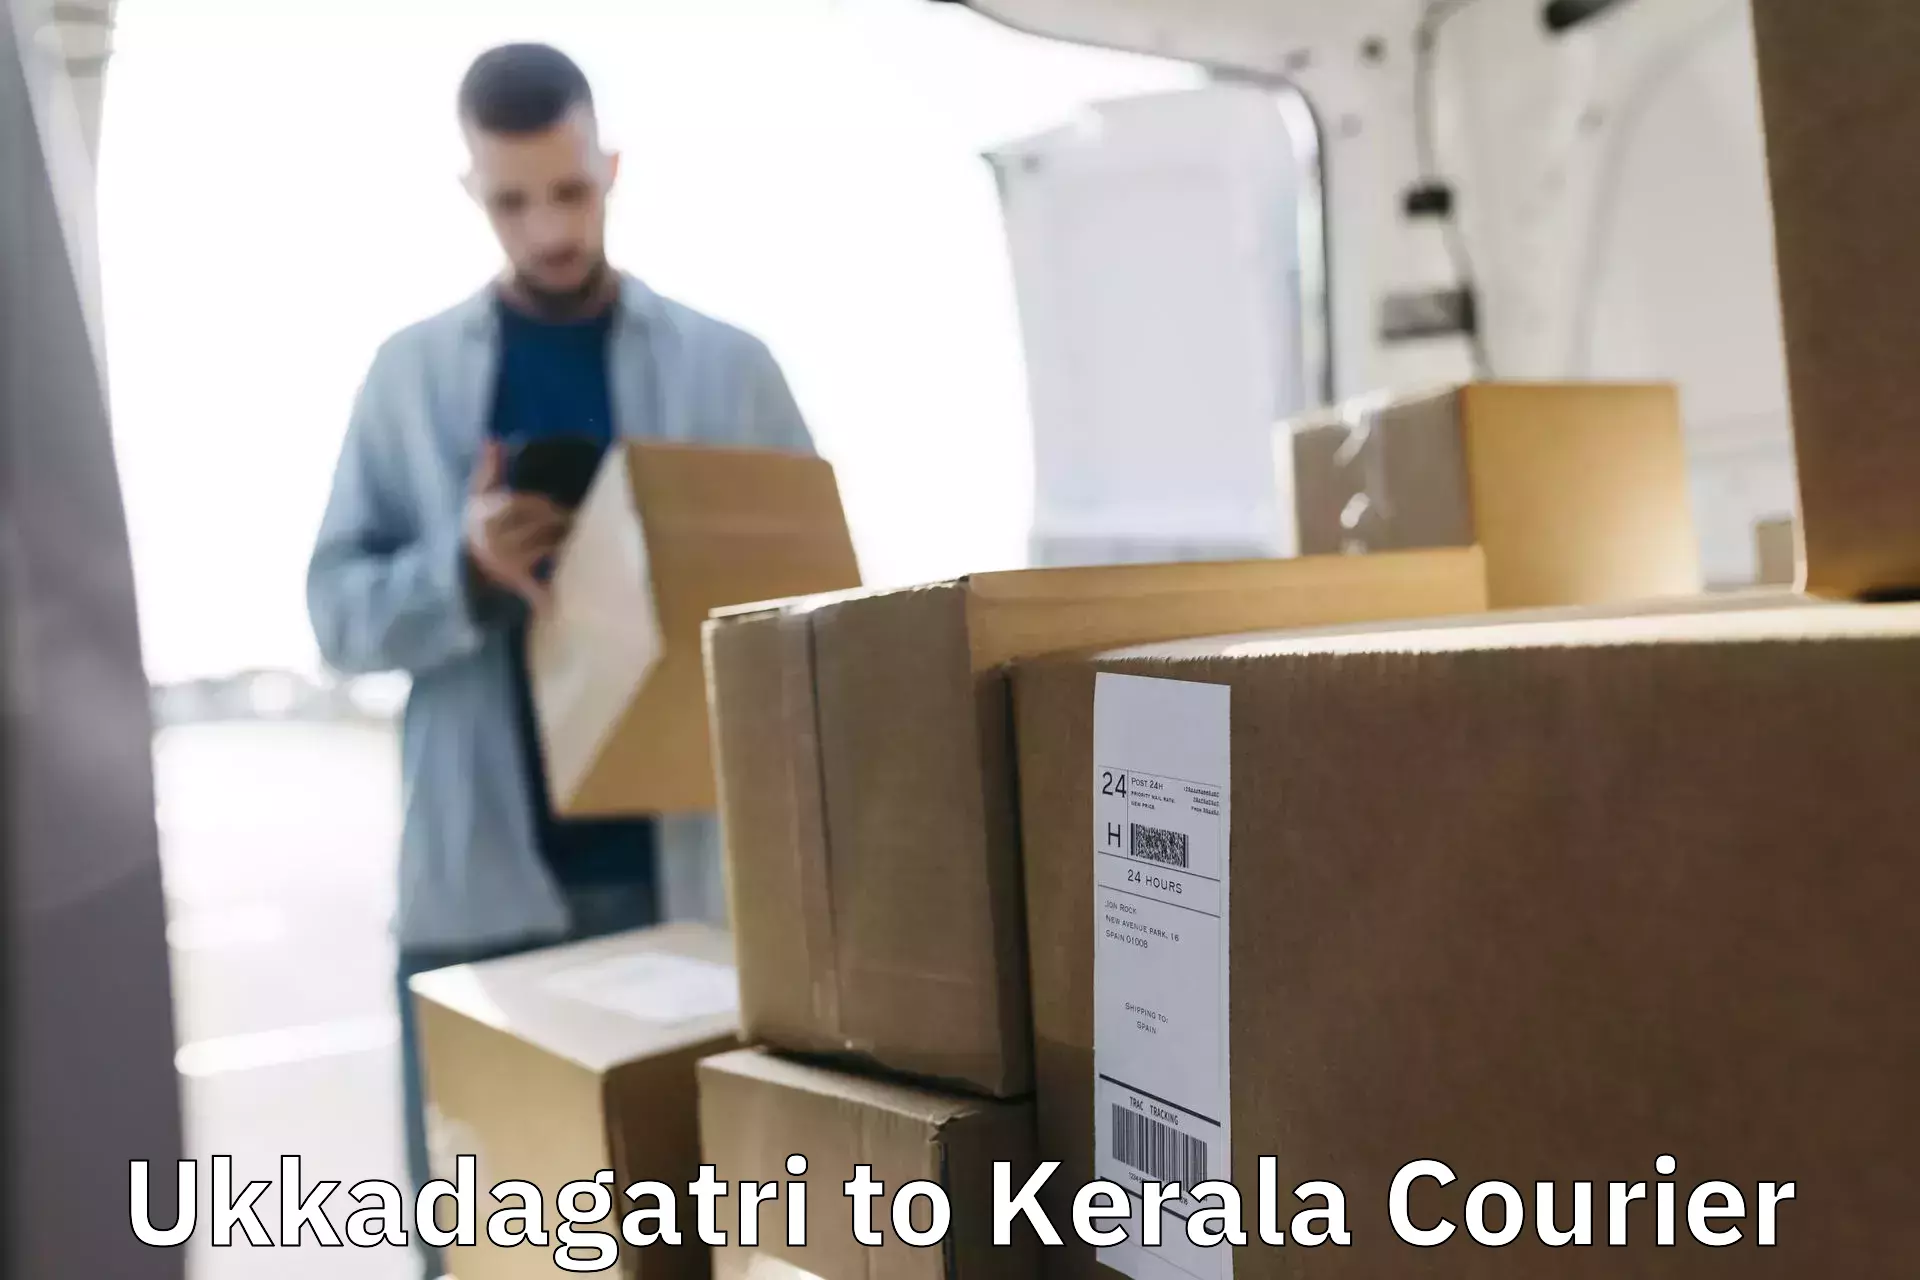 Reliable courier service Ukkadagatri to Kadanad